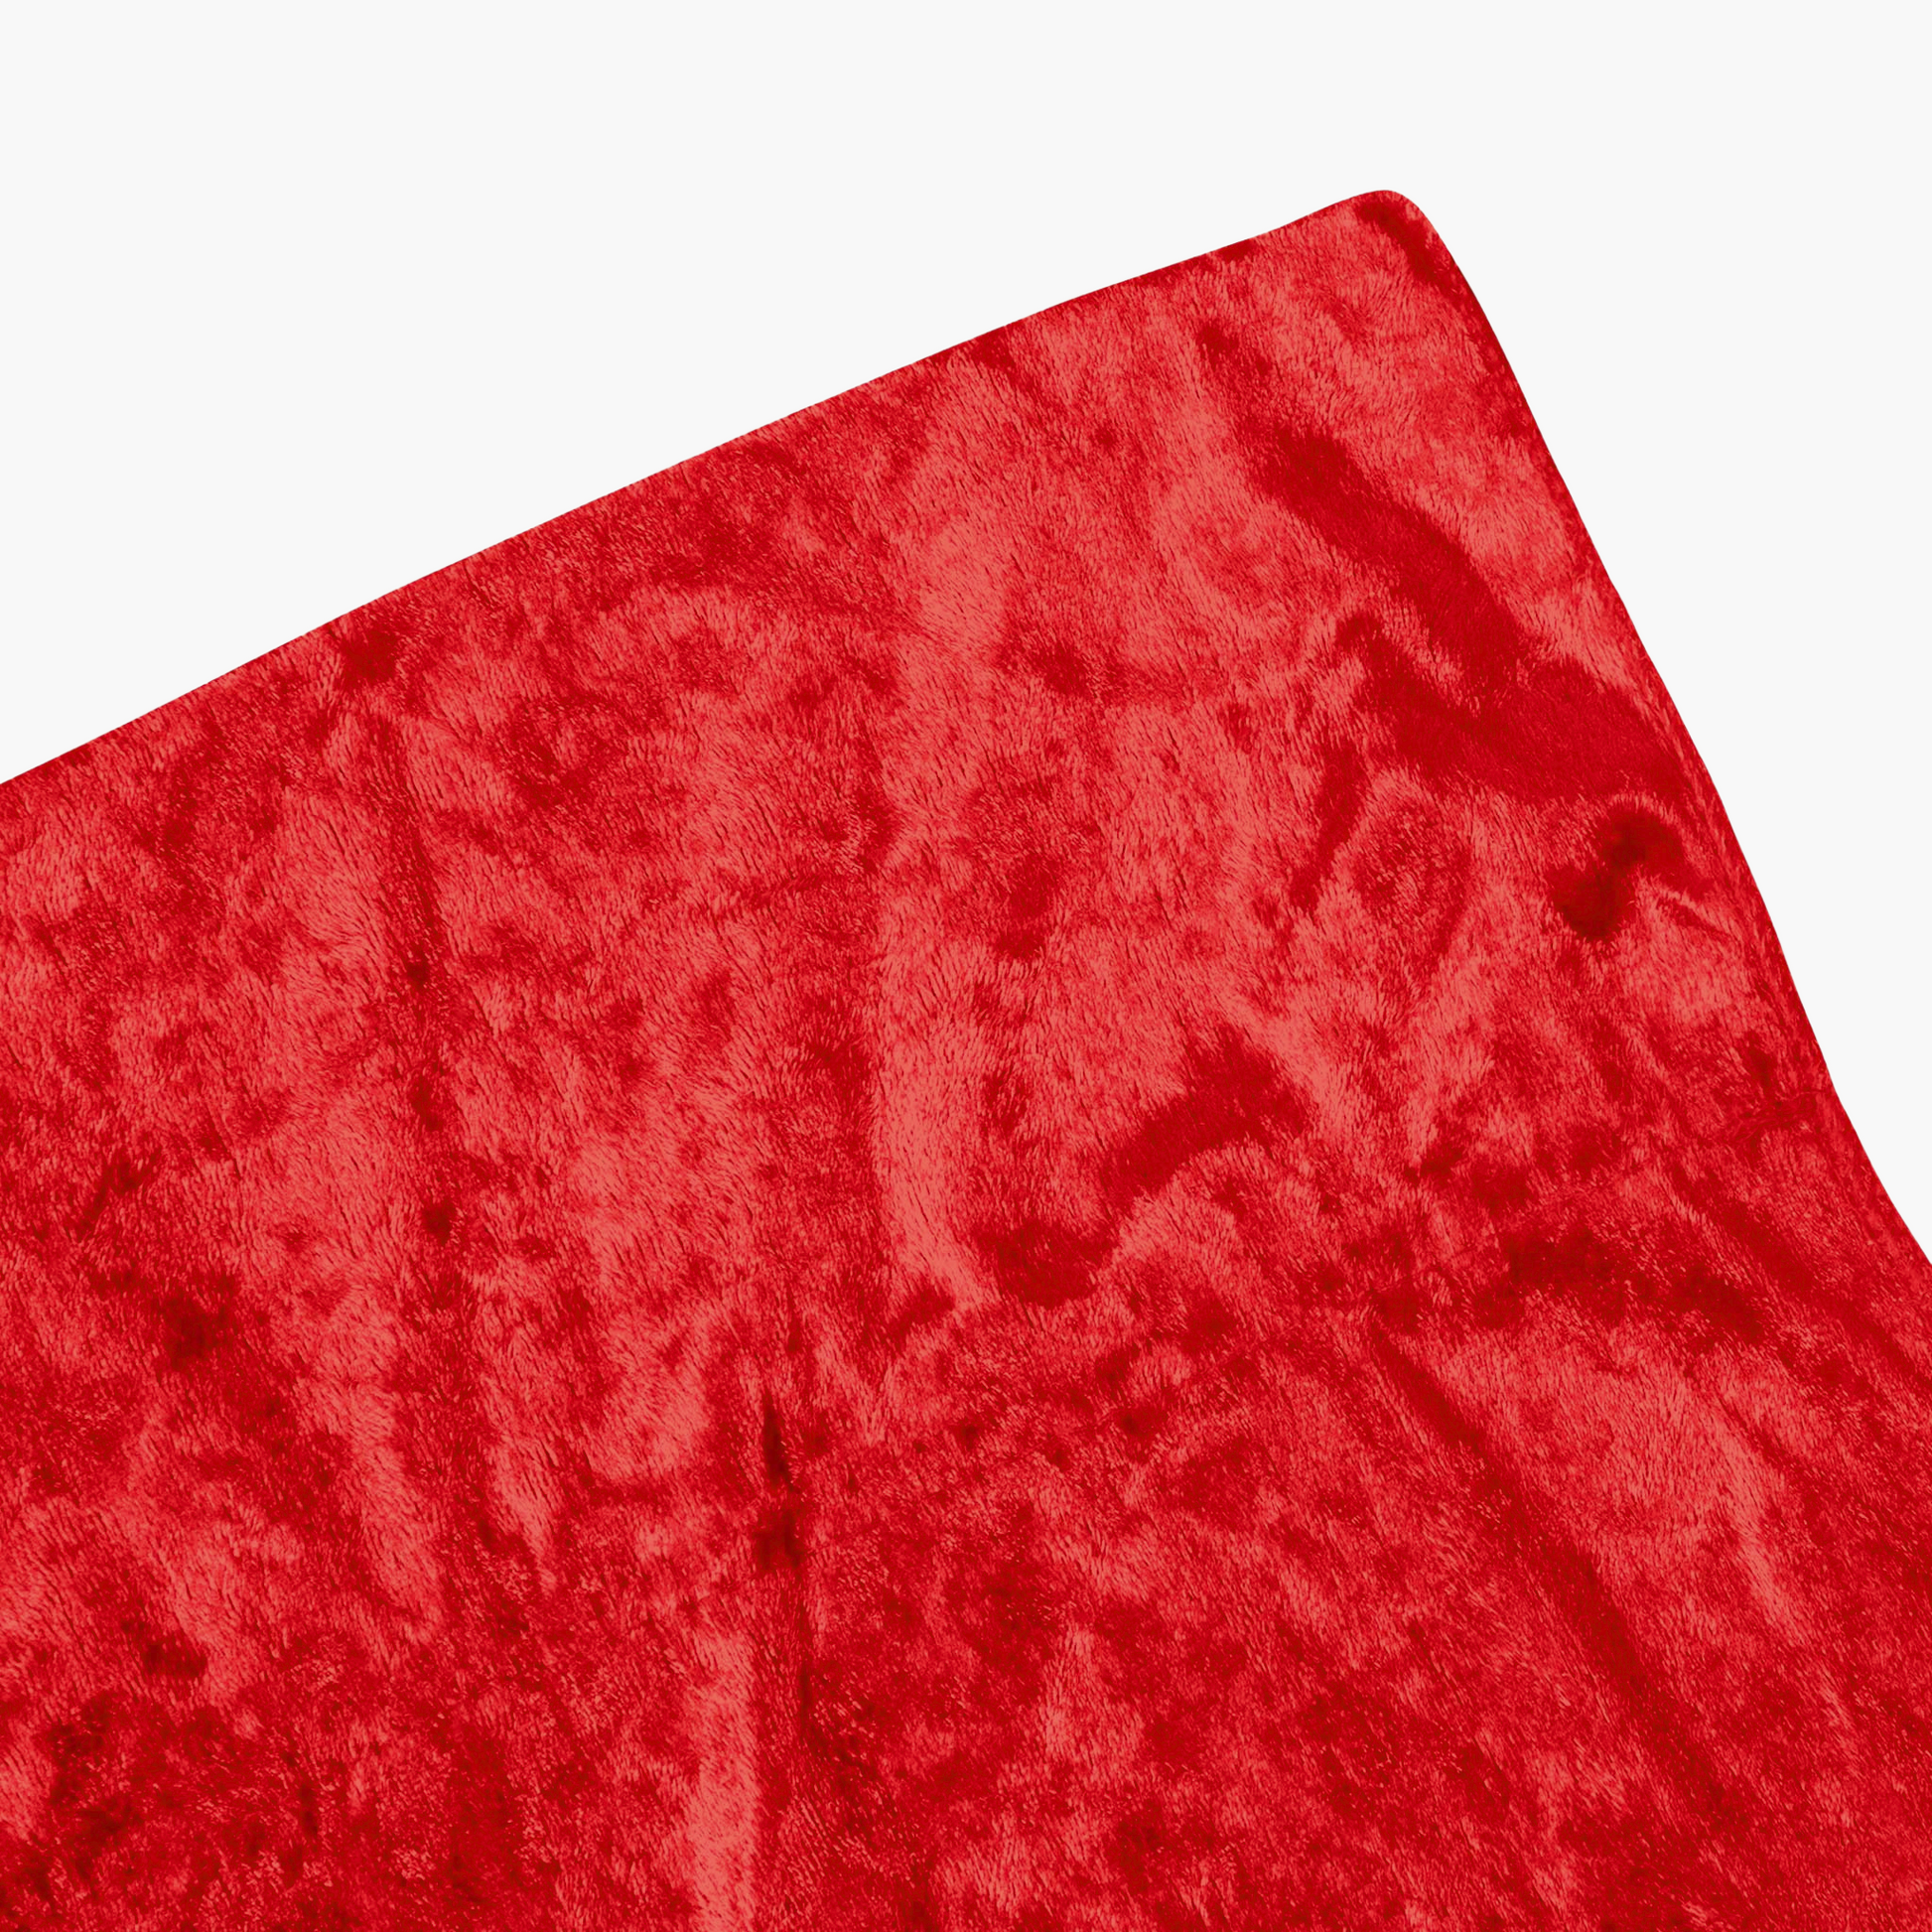 Velvet 12ft H x 52" W Drape/Backdrop Curtain Panel - Red